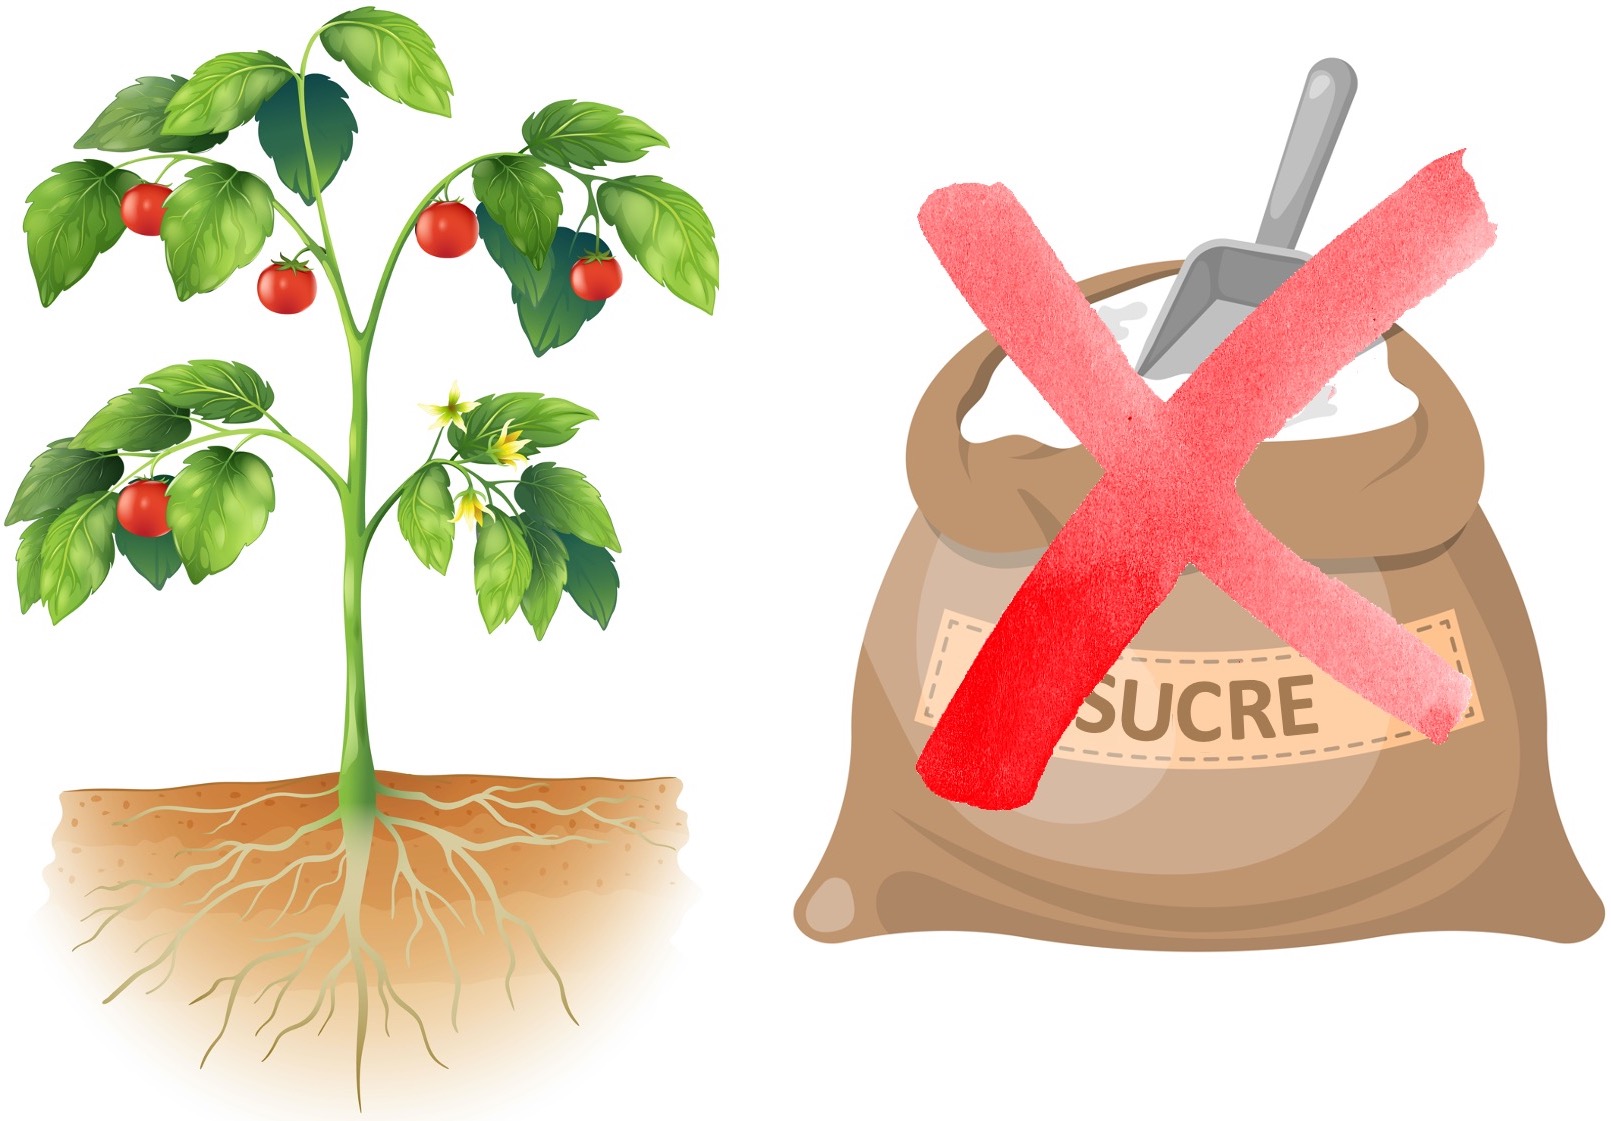 Mythe horticole: ajouter du sucre au sol des tomates les rend plus sucrées